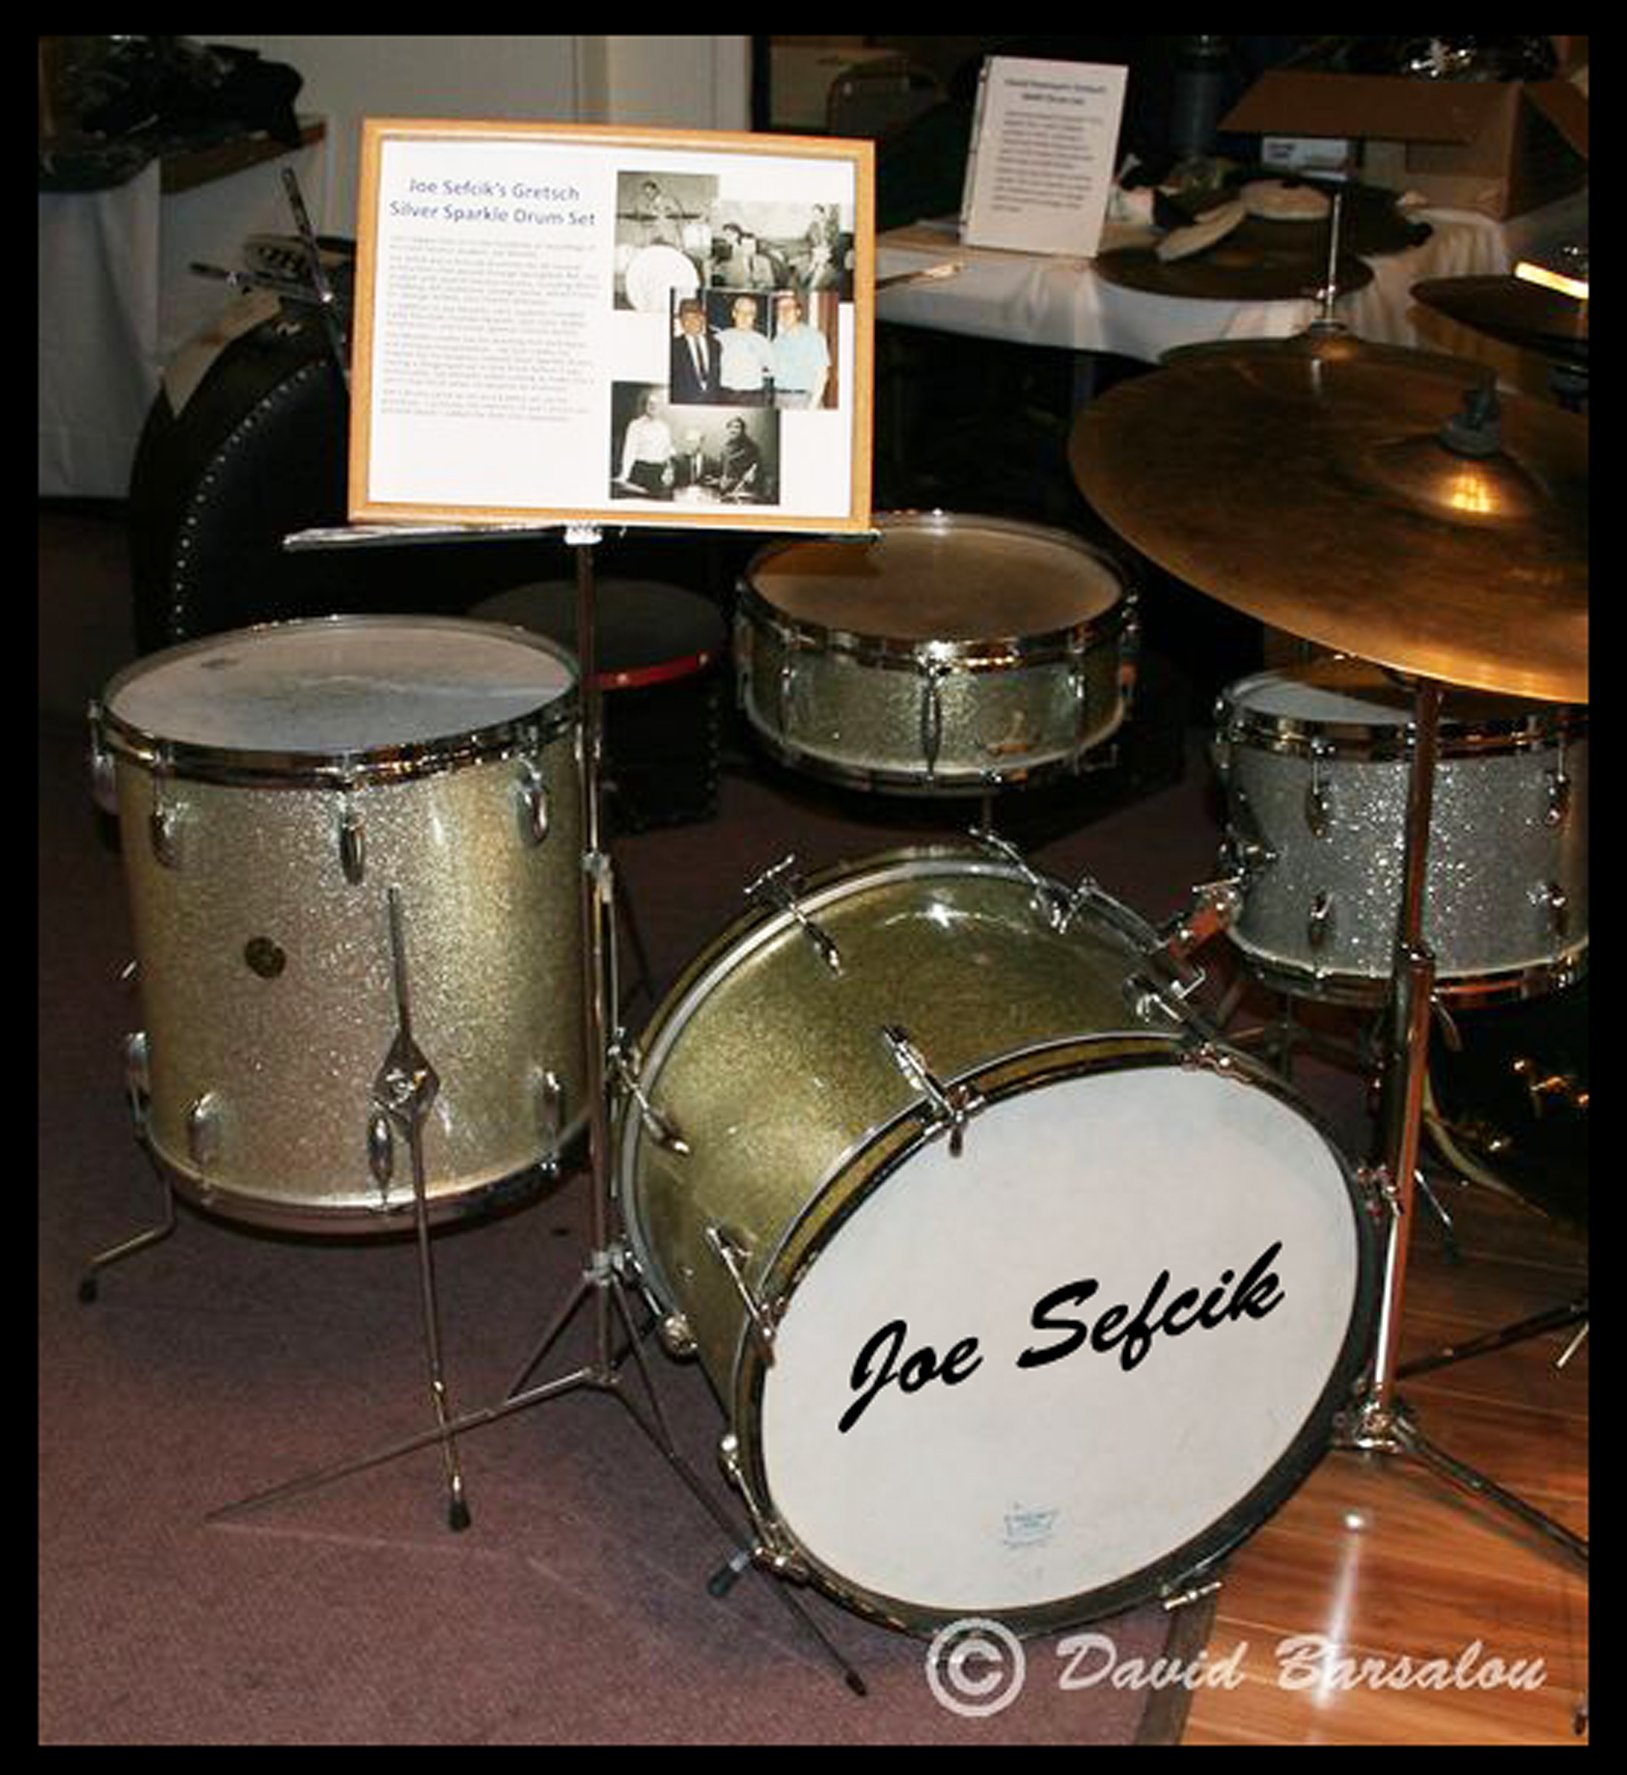 Joe-Sefcik's-Drums.jpg